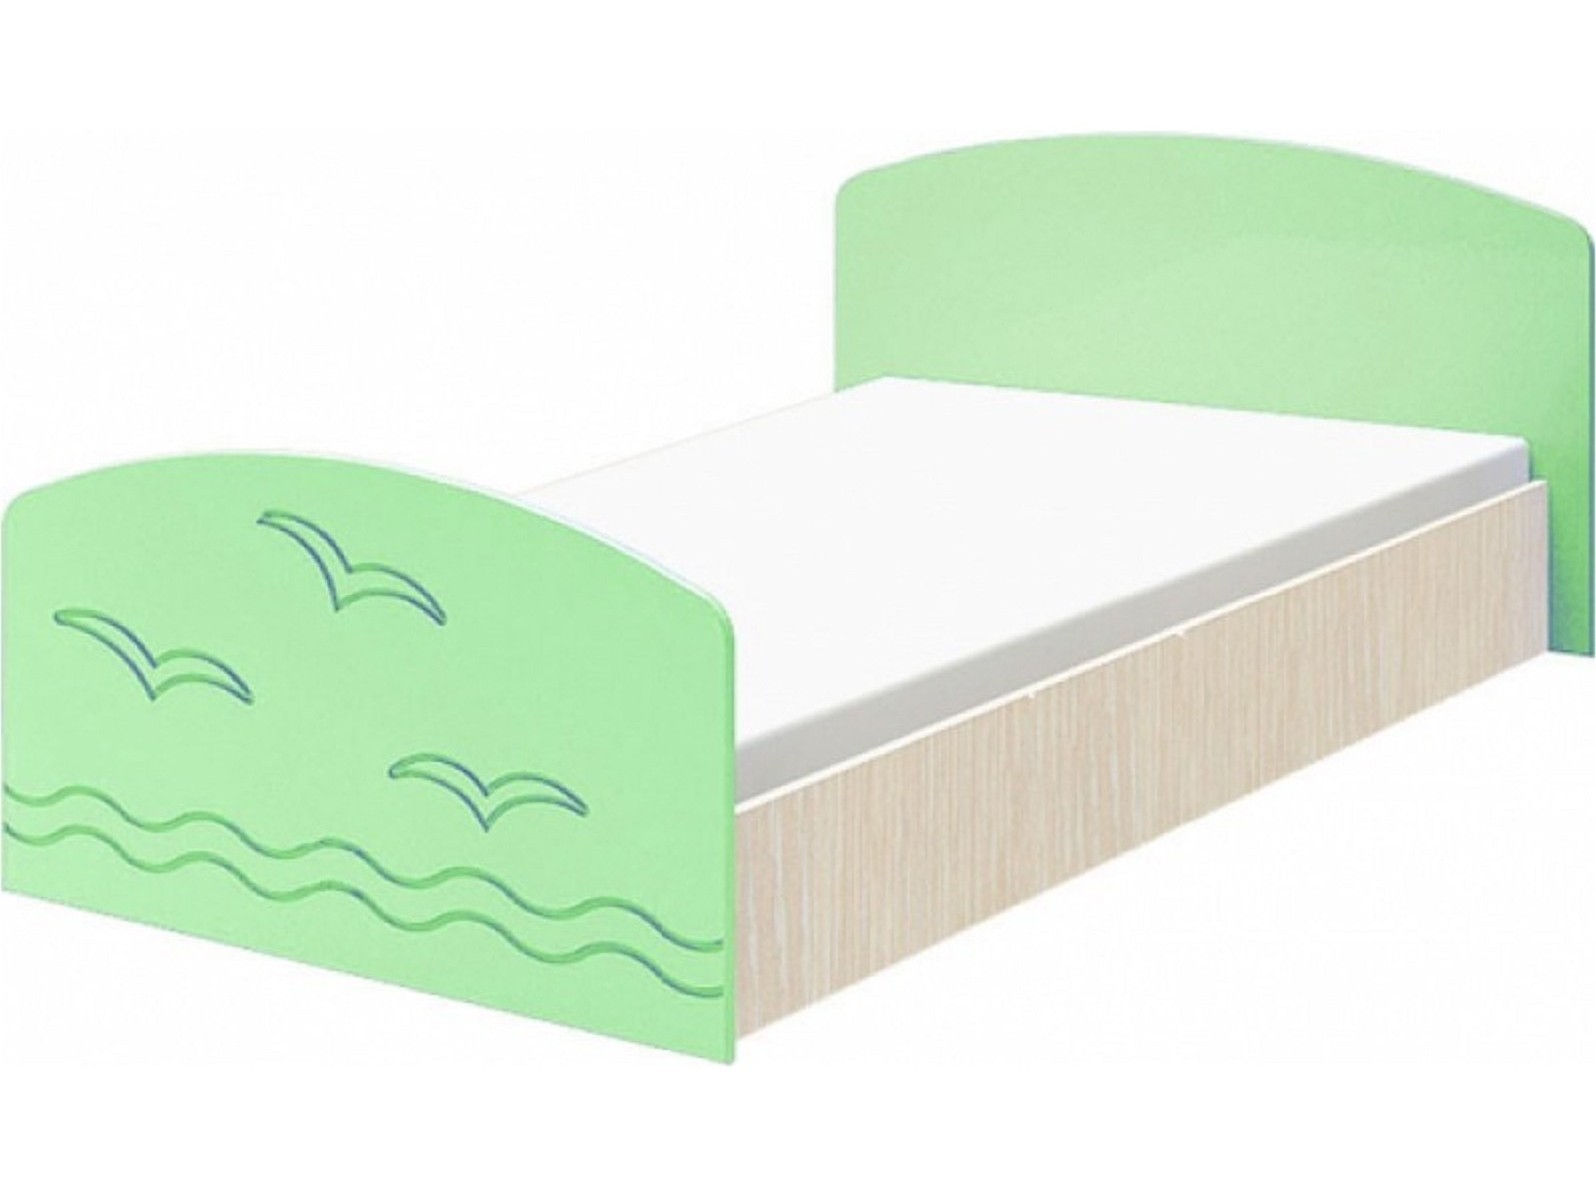 Юниор-2 Детская кровать 80, матовый (Салатовый, Дуб белёный) Зеленый, МДФ, ЛДСП юниор 2 стенка матовый салатовый дуб белёный салатовый мдф лдсп